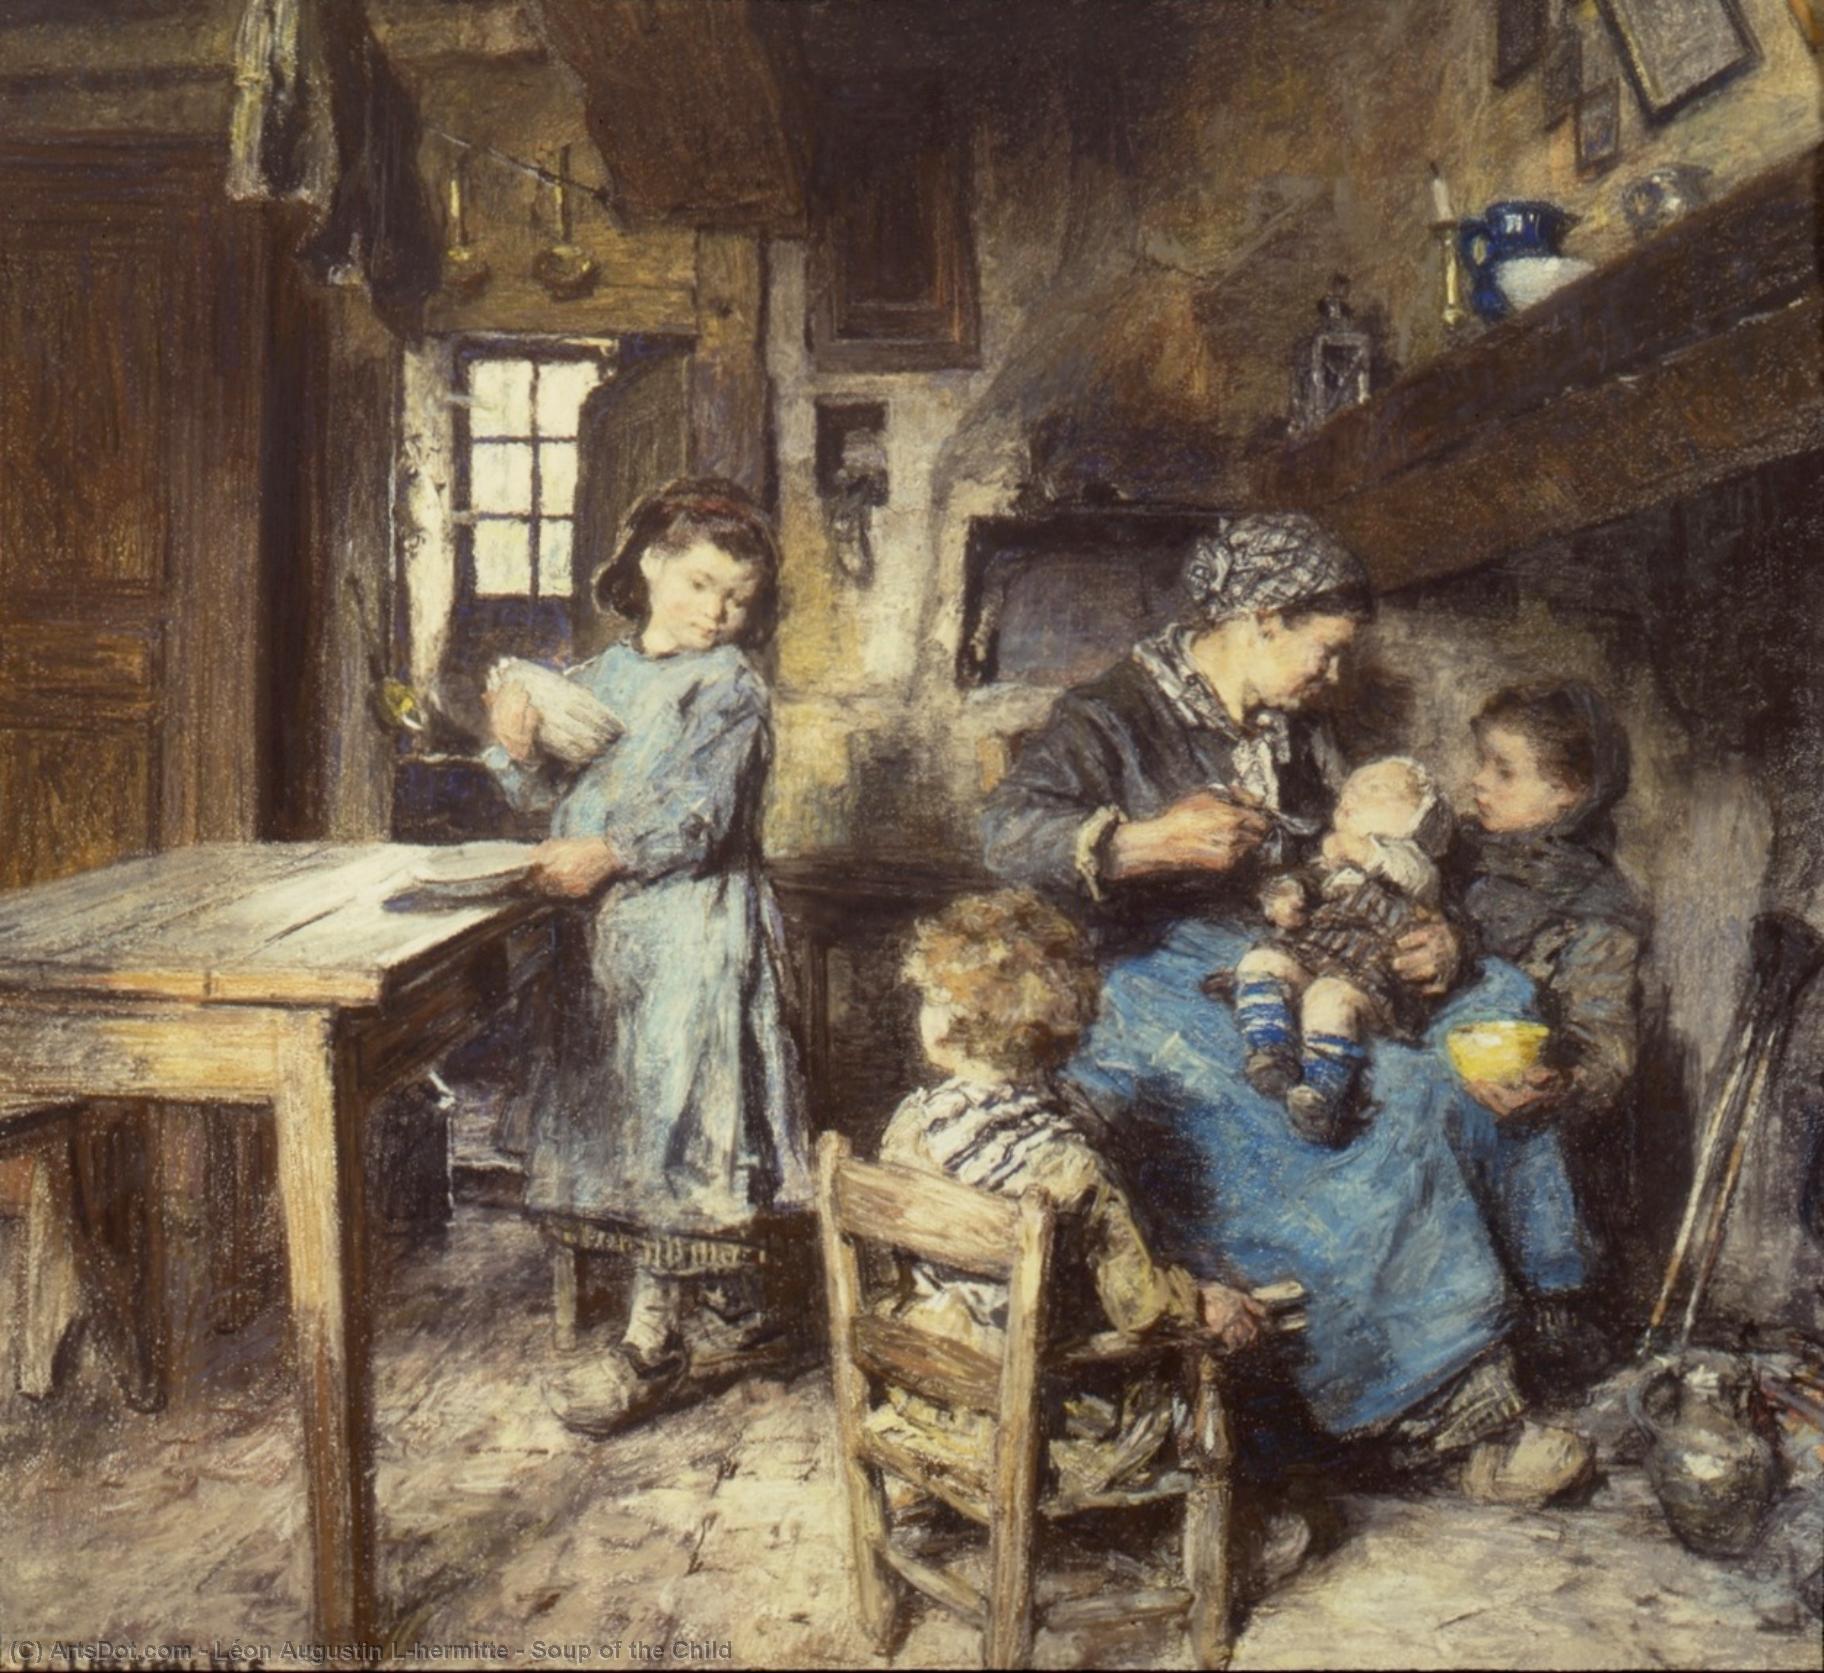 WikiOO.org - Enciklopedija likovnih umjetnosti - Slikarstvo, umjetnička djela Léon Augustin L'hermitte - Soup of the Child